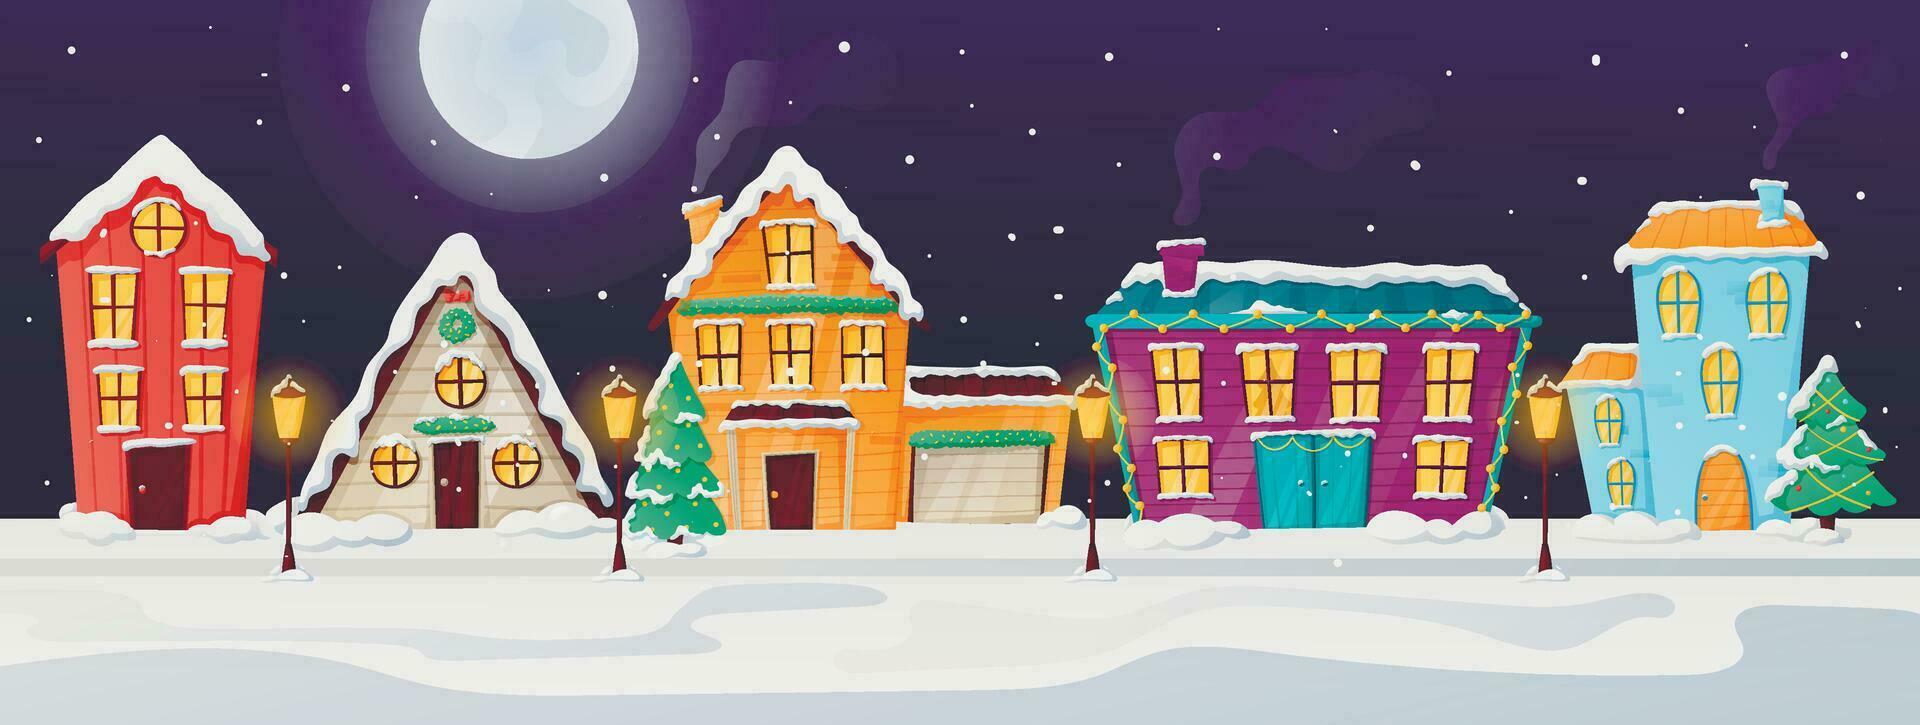 vinter- natt tecknad serie landskap, by eller stad gata med hus och stugor. jul dekorationer, full måne och snöfall. vektor